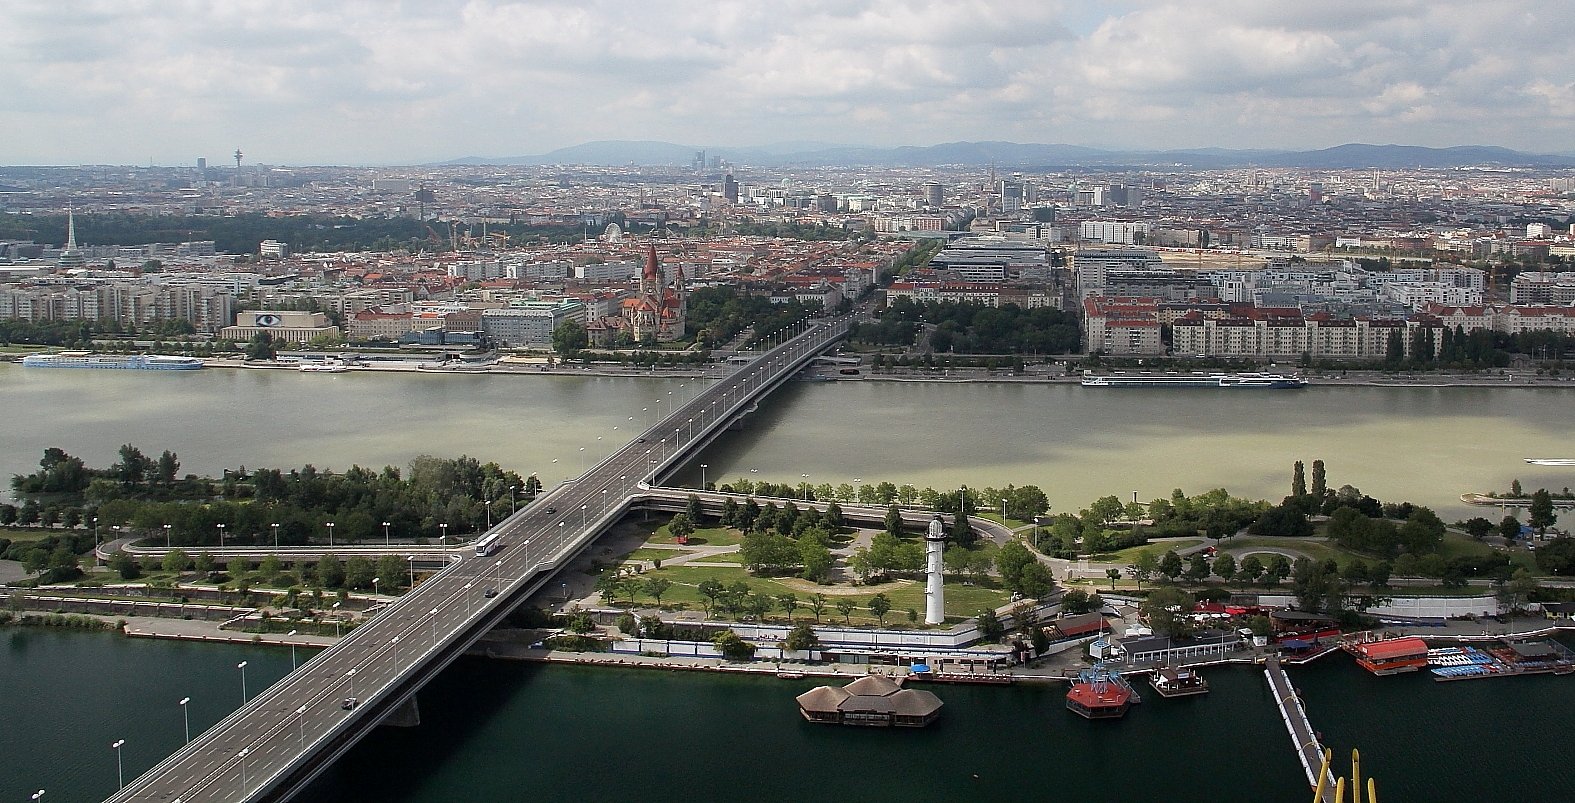 Blick über die Donauinsel und die Stadt Wien, vom nördlichen Ufer der Reichsbrücke aus gesehen